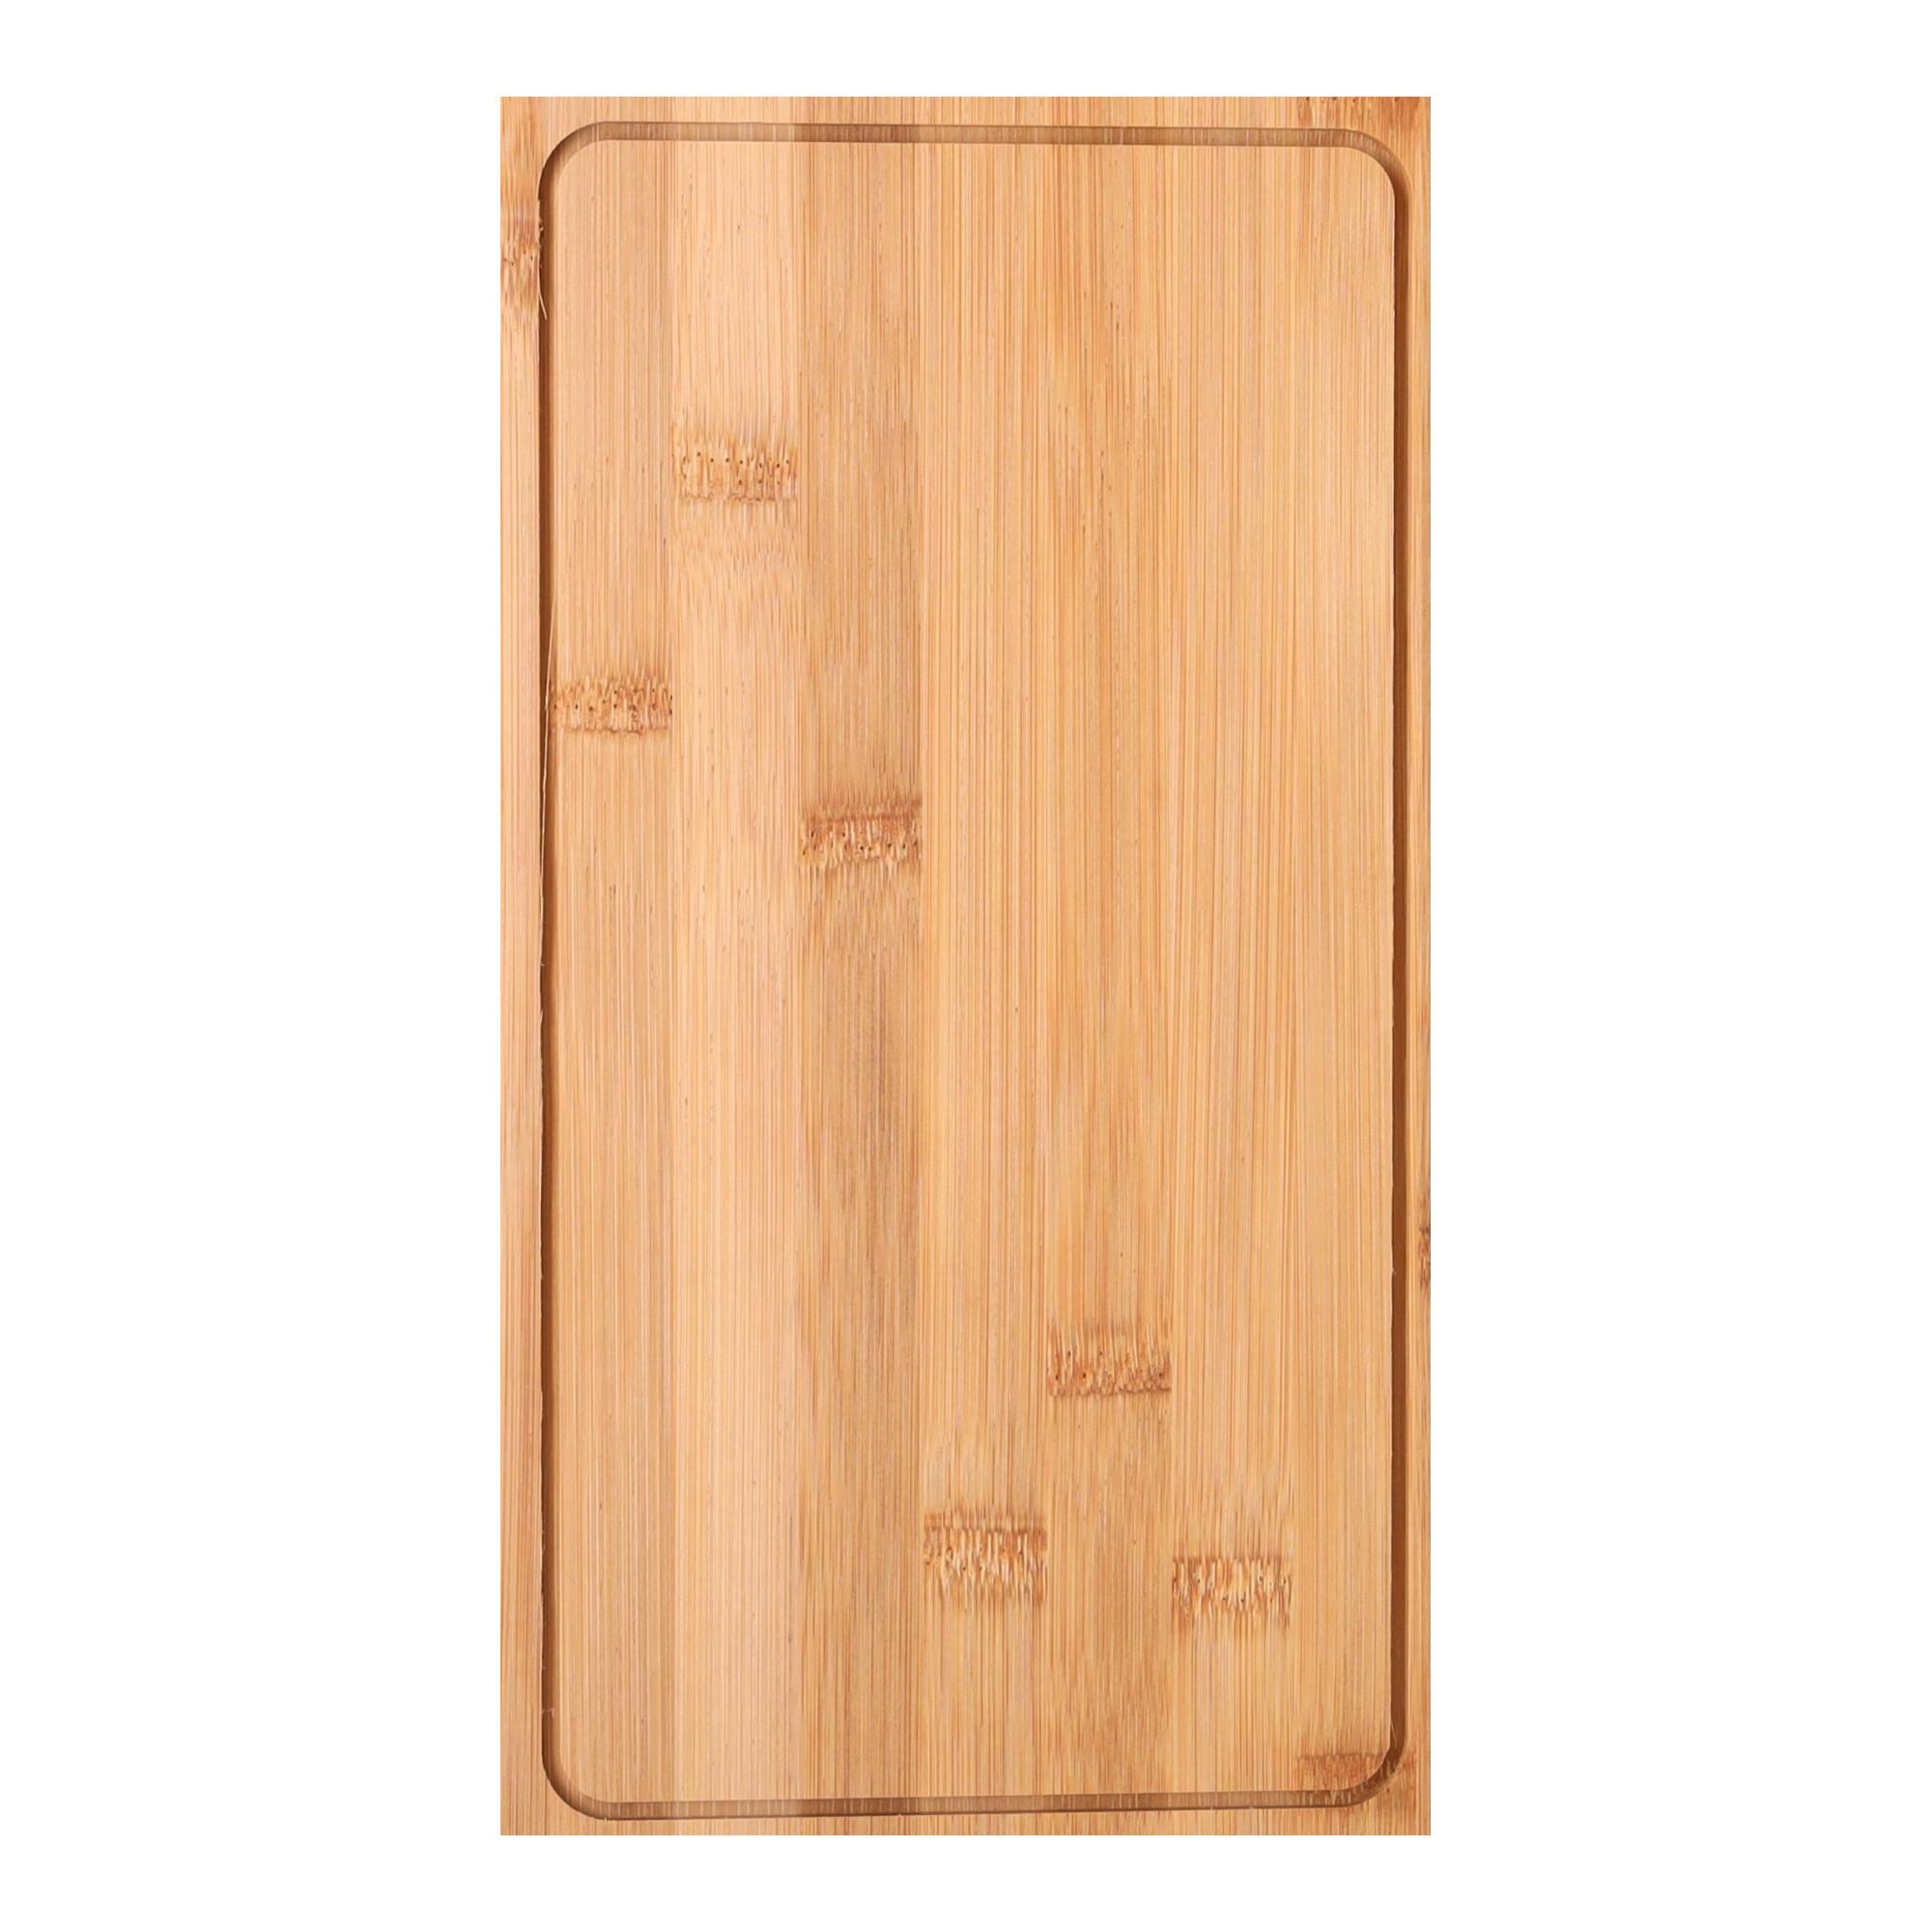 Drewniana deska do pizzy - prostokątna, duża